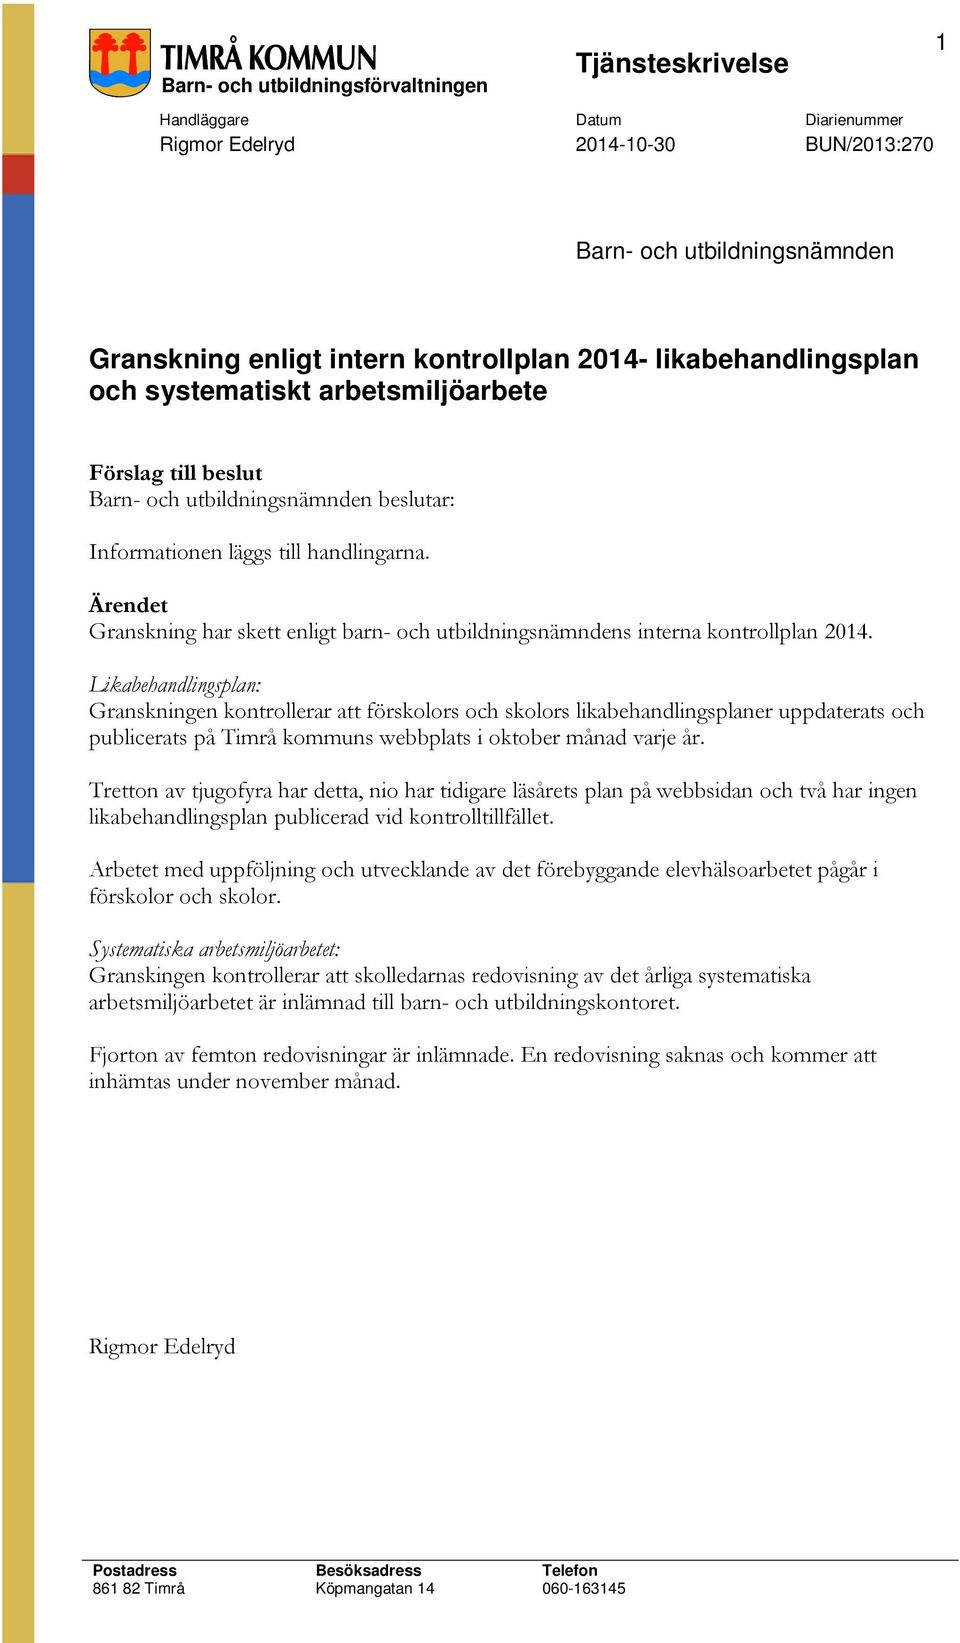 Likabehandlingsplan: Granskningen kontrollerar att förskolors och skolors likabehandlingsplaner uppdaterats och publicerats på Timrå kommuns webbplats i oktober månad varje år.